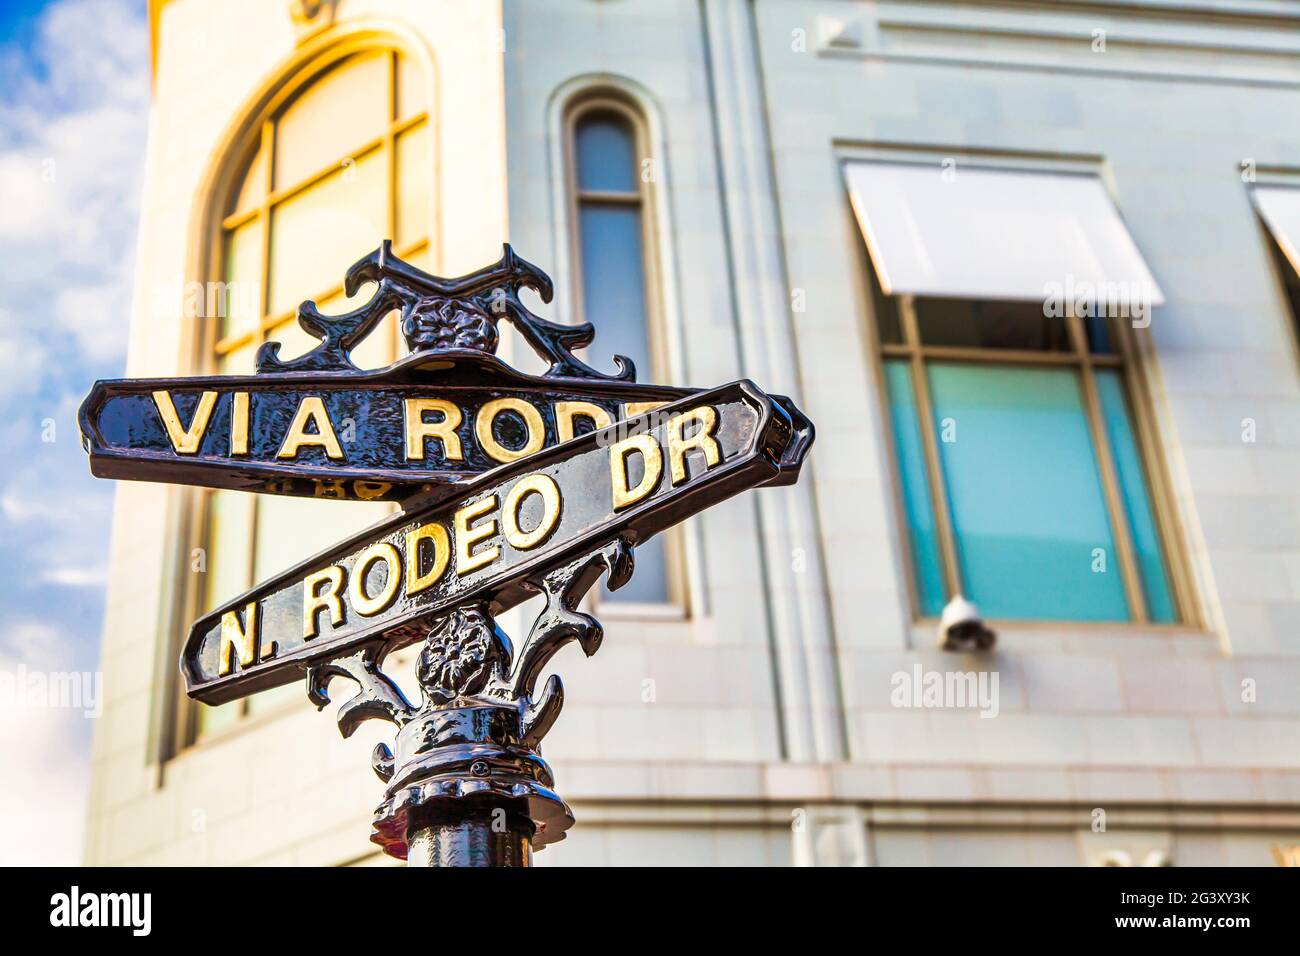 Der berühmte Rodeo Drive in Los Angeles, Kalifornien. Straße für Shopping und Mode. Stockfoto